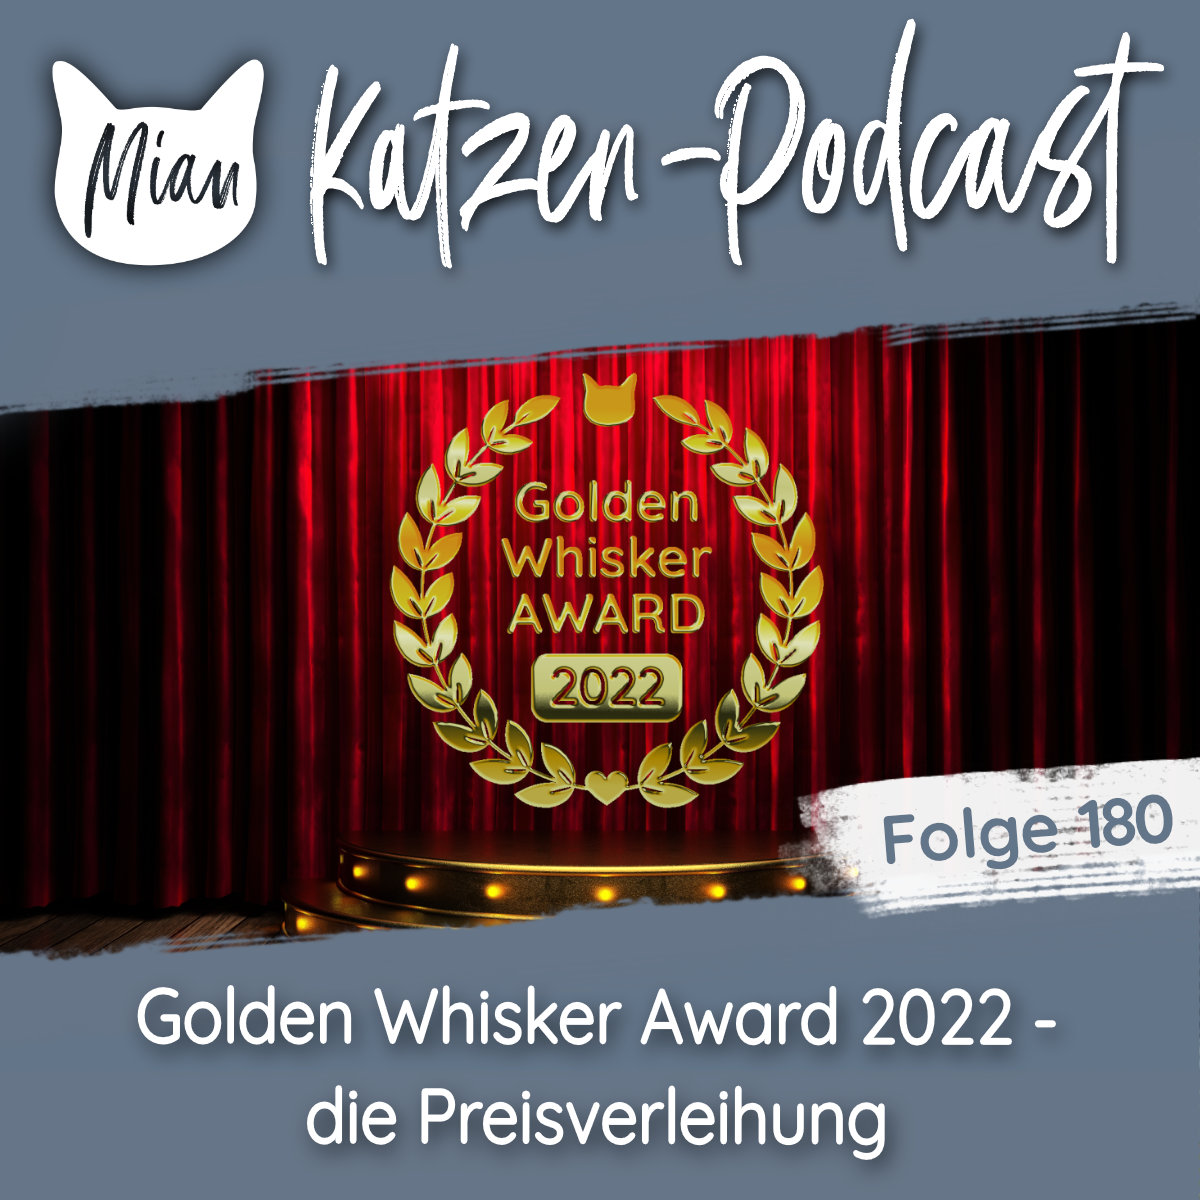 Golden Whisker Award 2022 - die Preisverleihung | MKP180